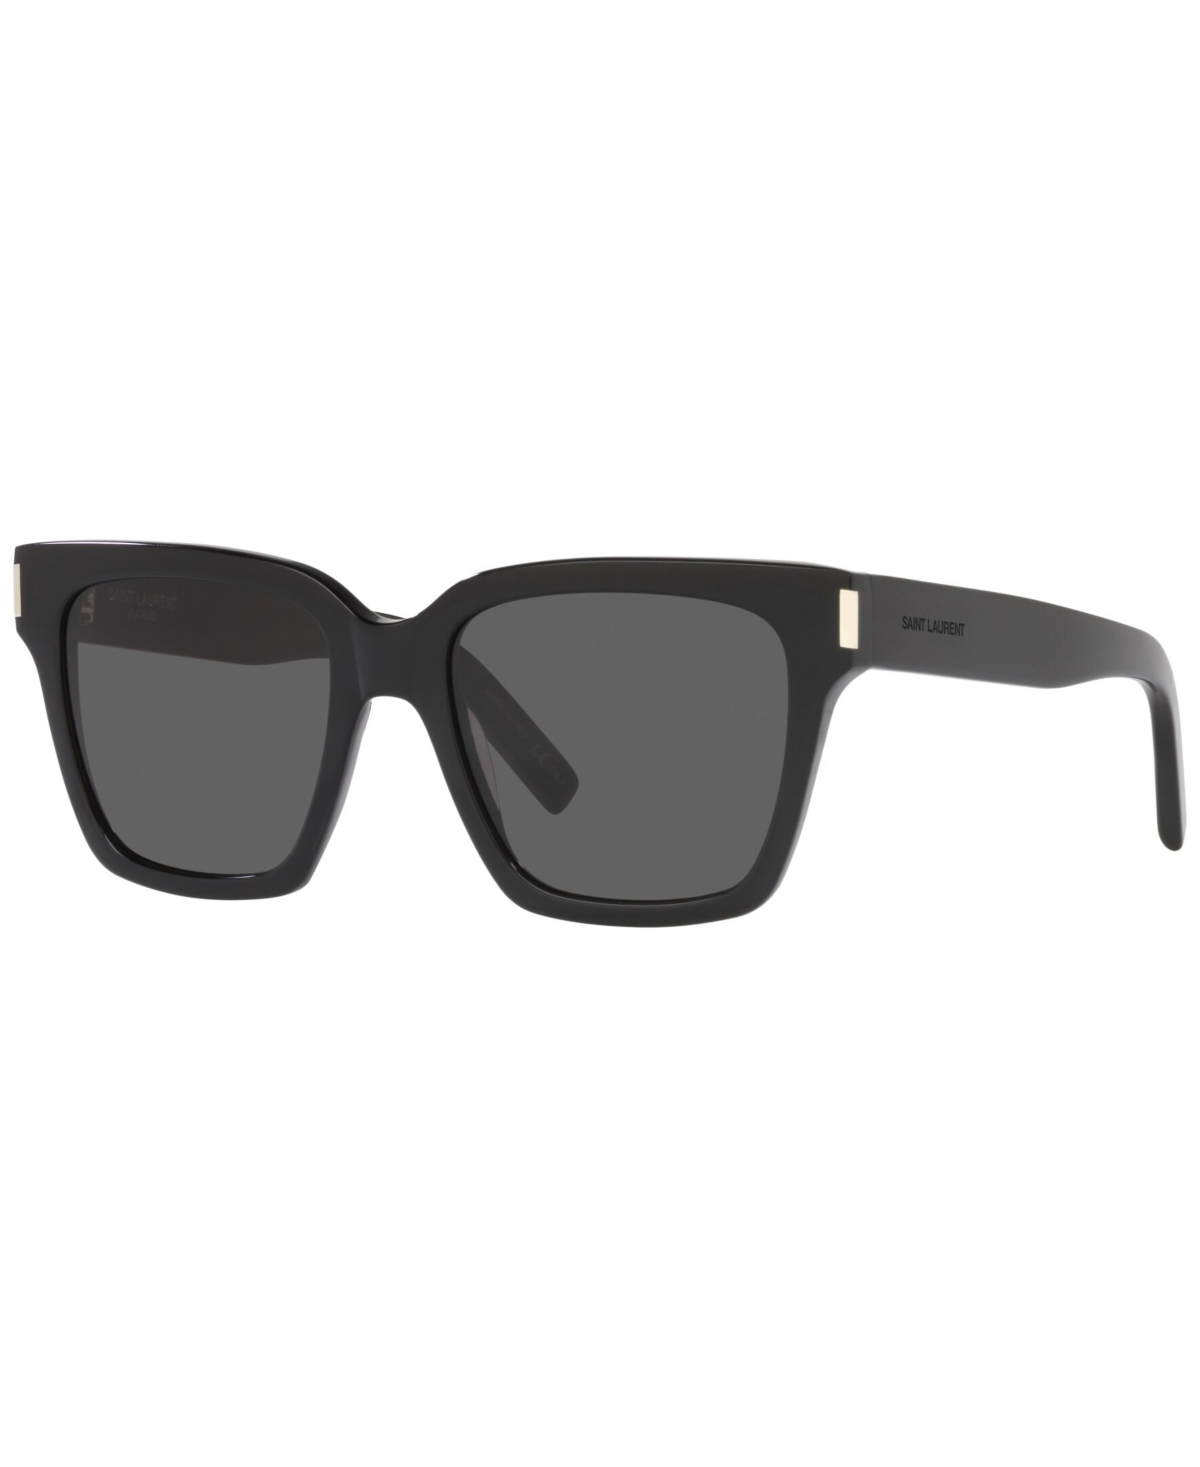 Saint Laurent Unisex Sunglasses, Sl 507 In Black